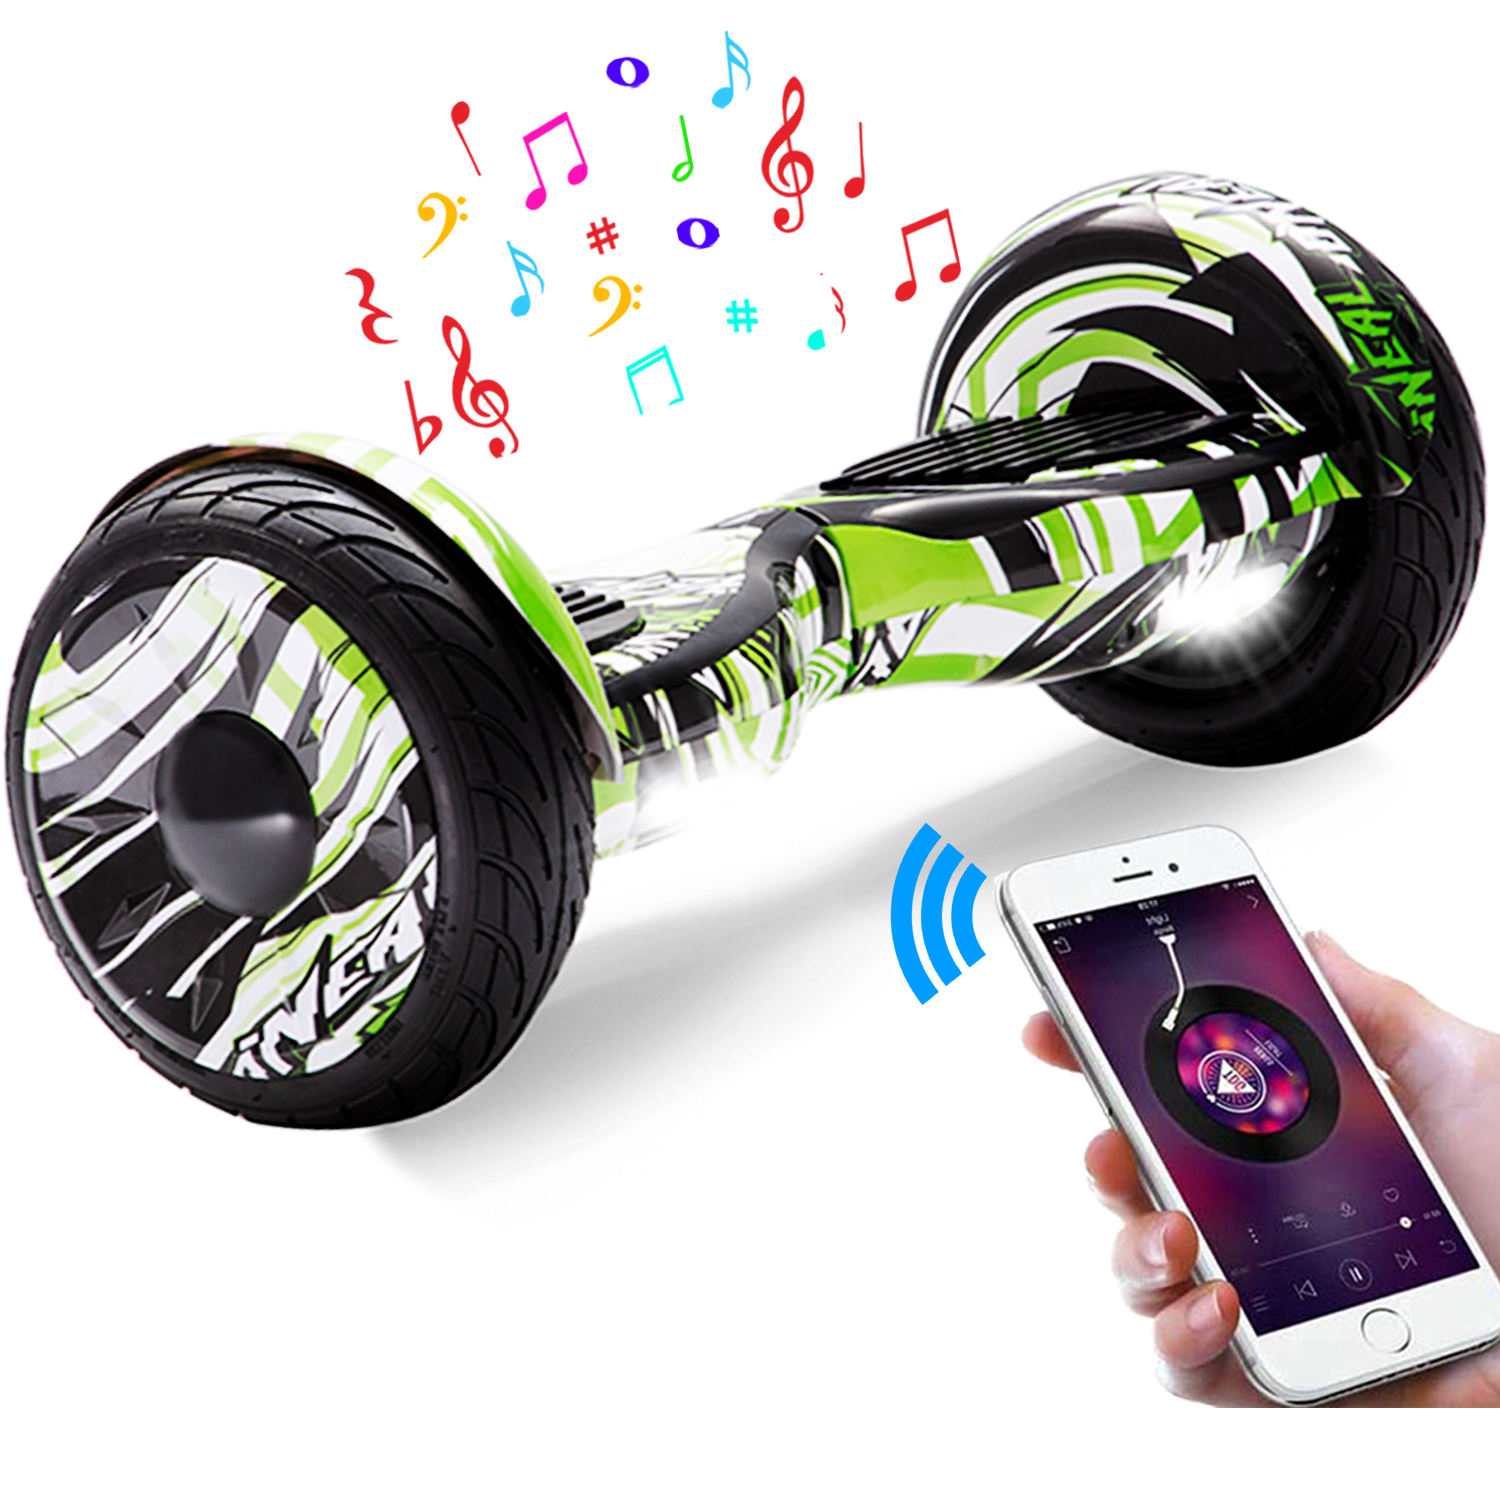 10" grüner Wirbelwind Hoverboard mit Bluetooth, Musik Lautsprecher und Led Leuchten - 700W 15km/h